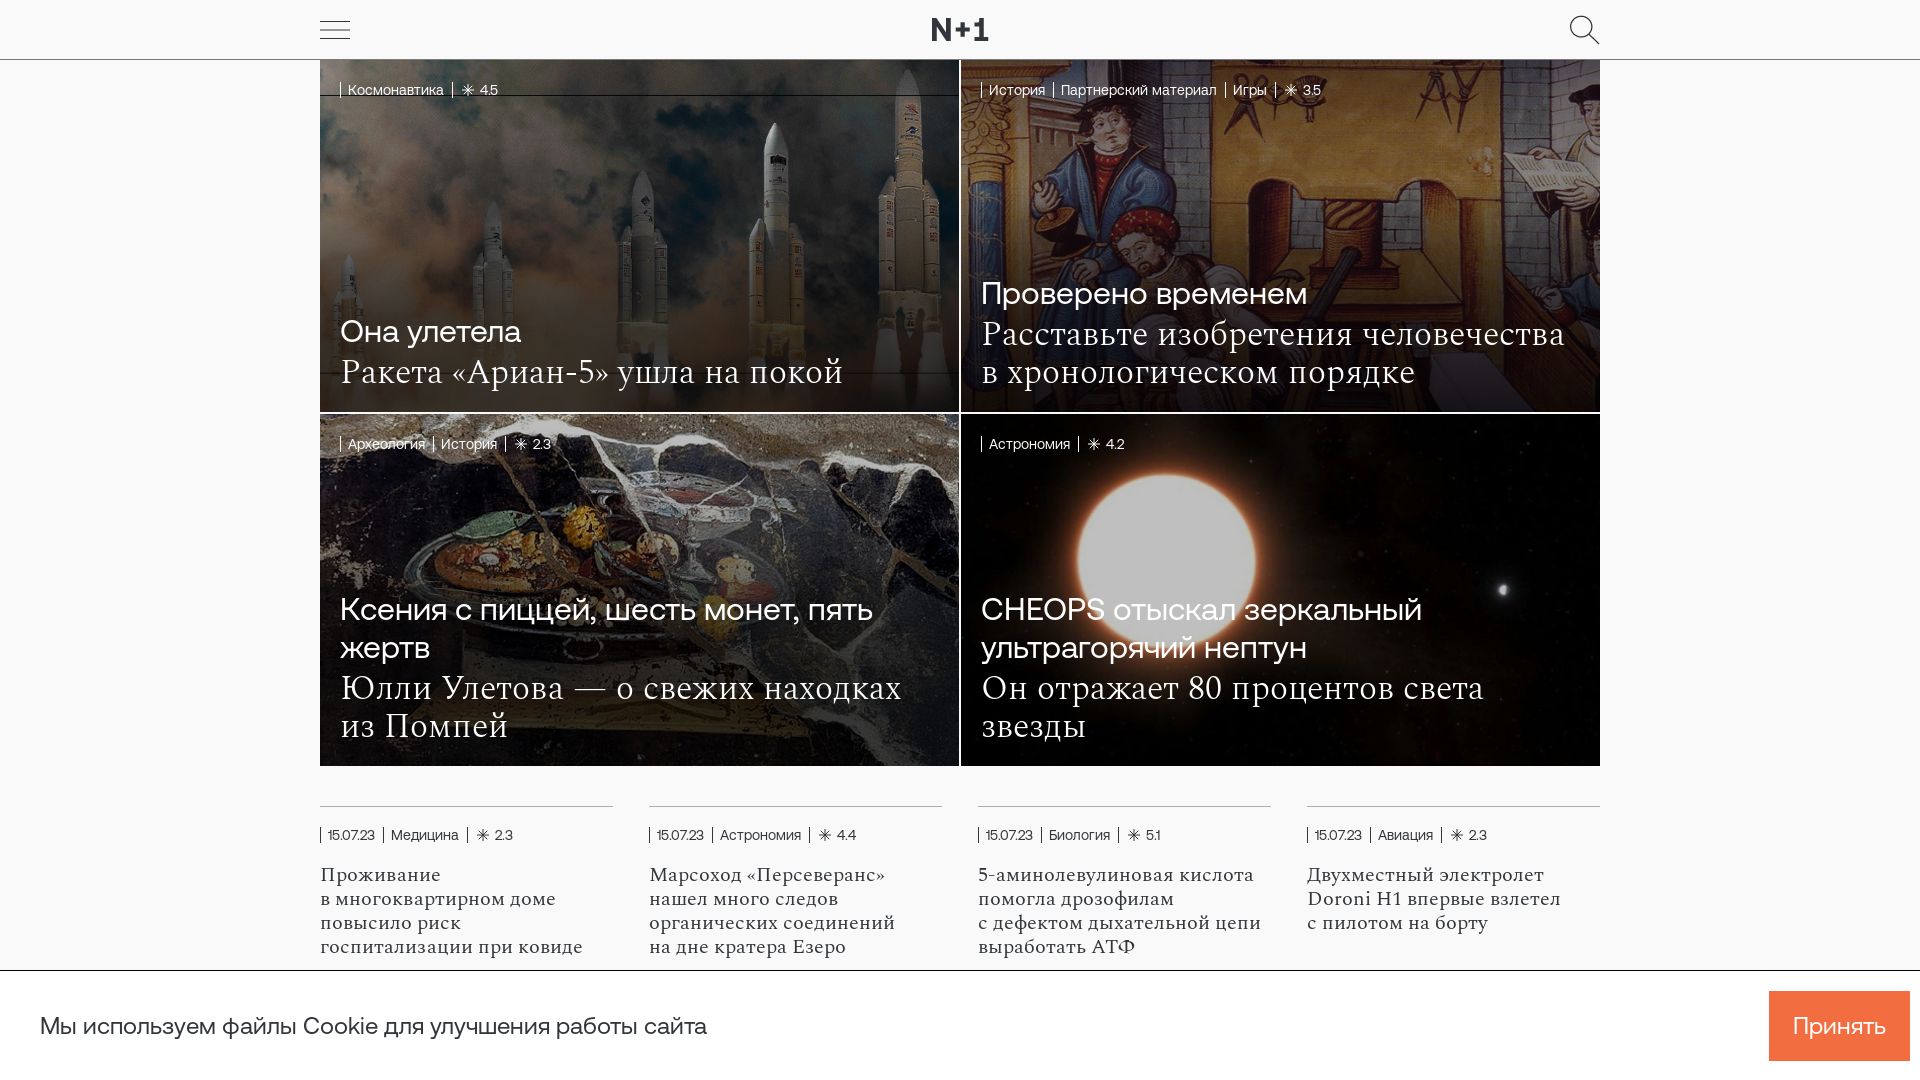 Website status nplus1.ru is   ONLINE